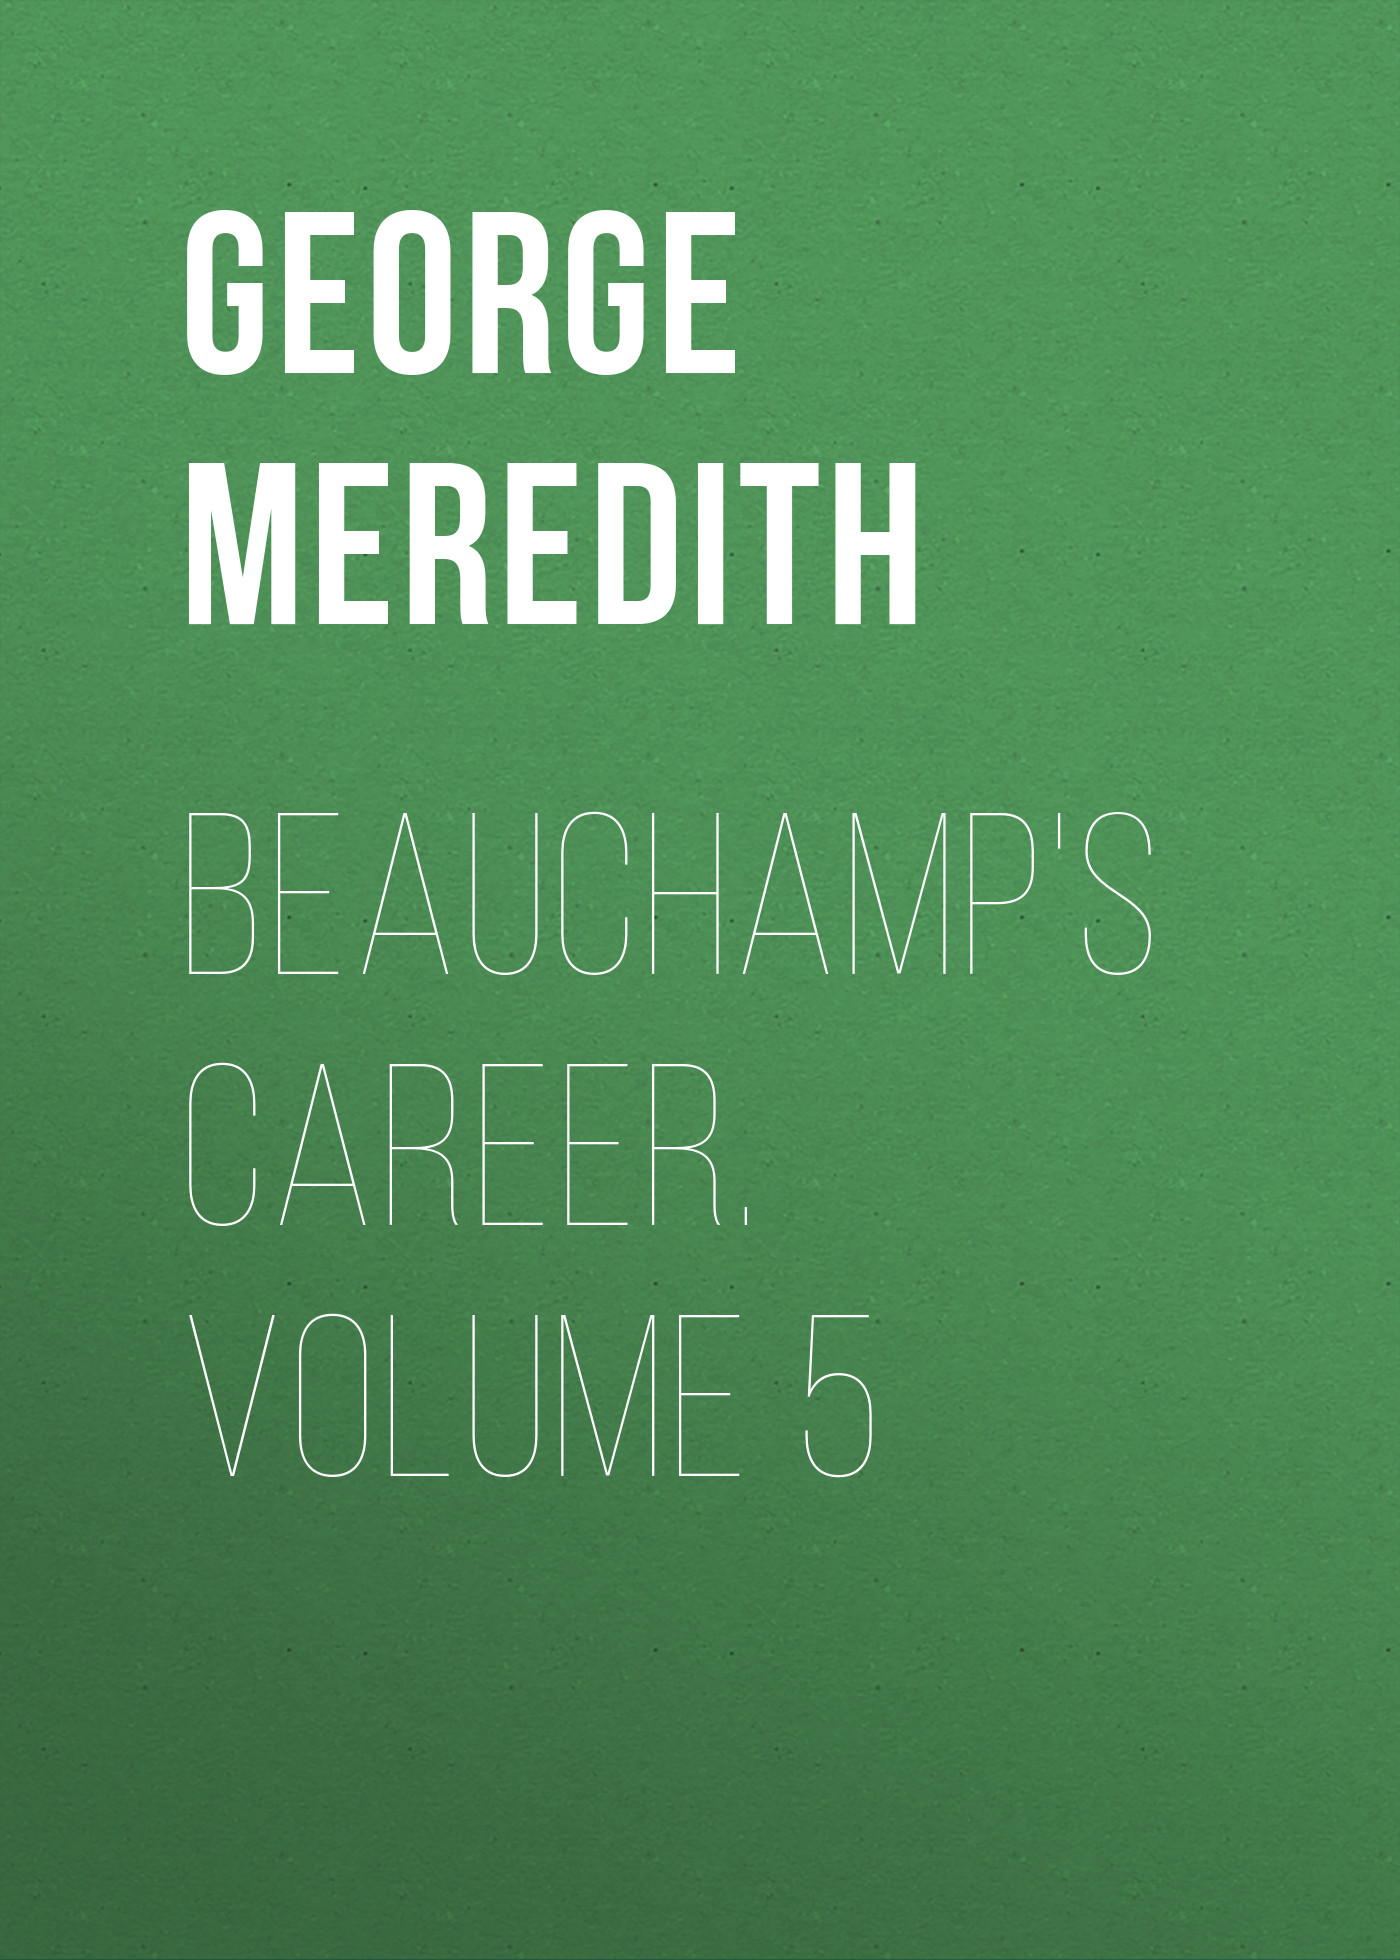 Книга Beauchamp's Career. Volume 5 из серии , созданная George Meredith, может относится к жанру Зарубежная классика, Литература 19 века, Зарубежная старинная литература. Стоимость электронной книги Beauchamp's Career. Volume 5 с идентификатором 36096173 составляет 0 руб.